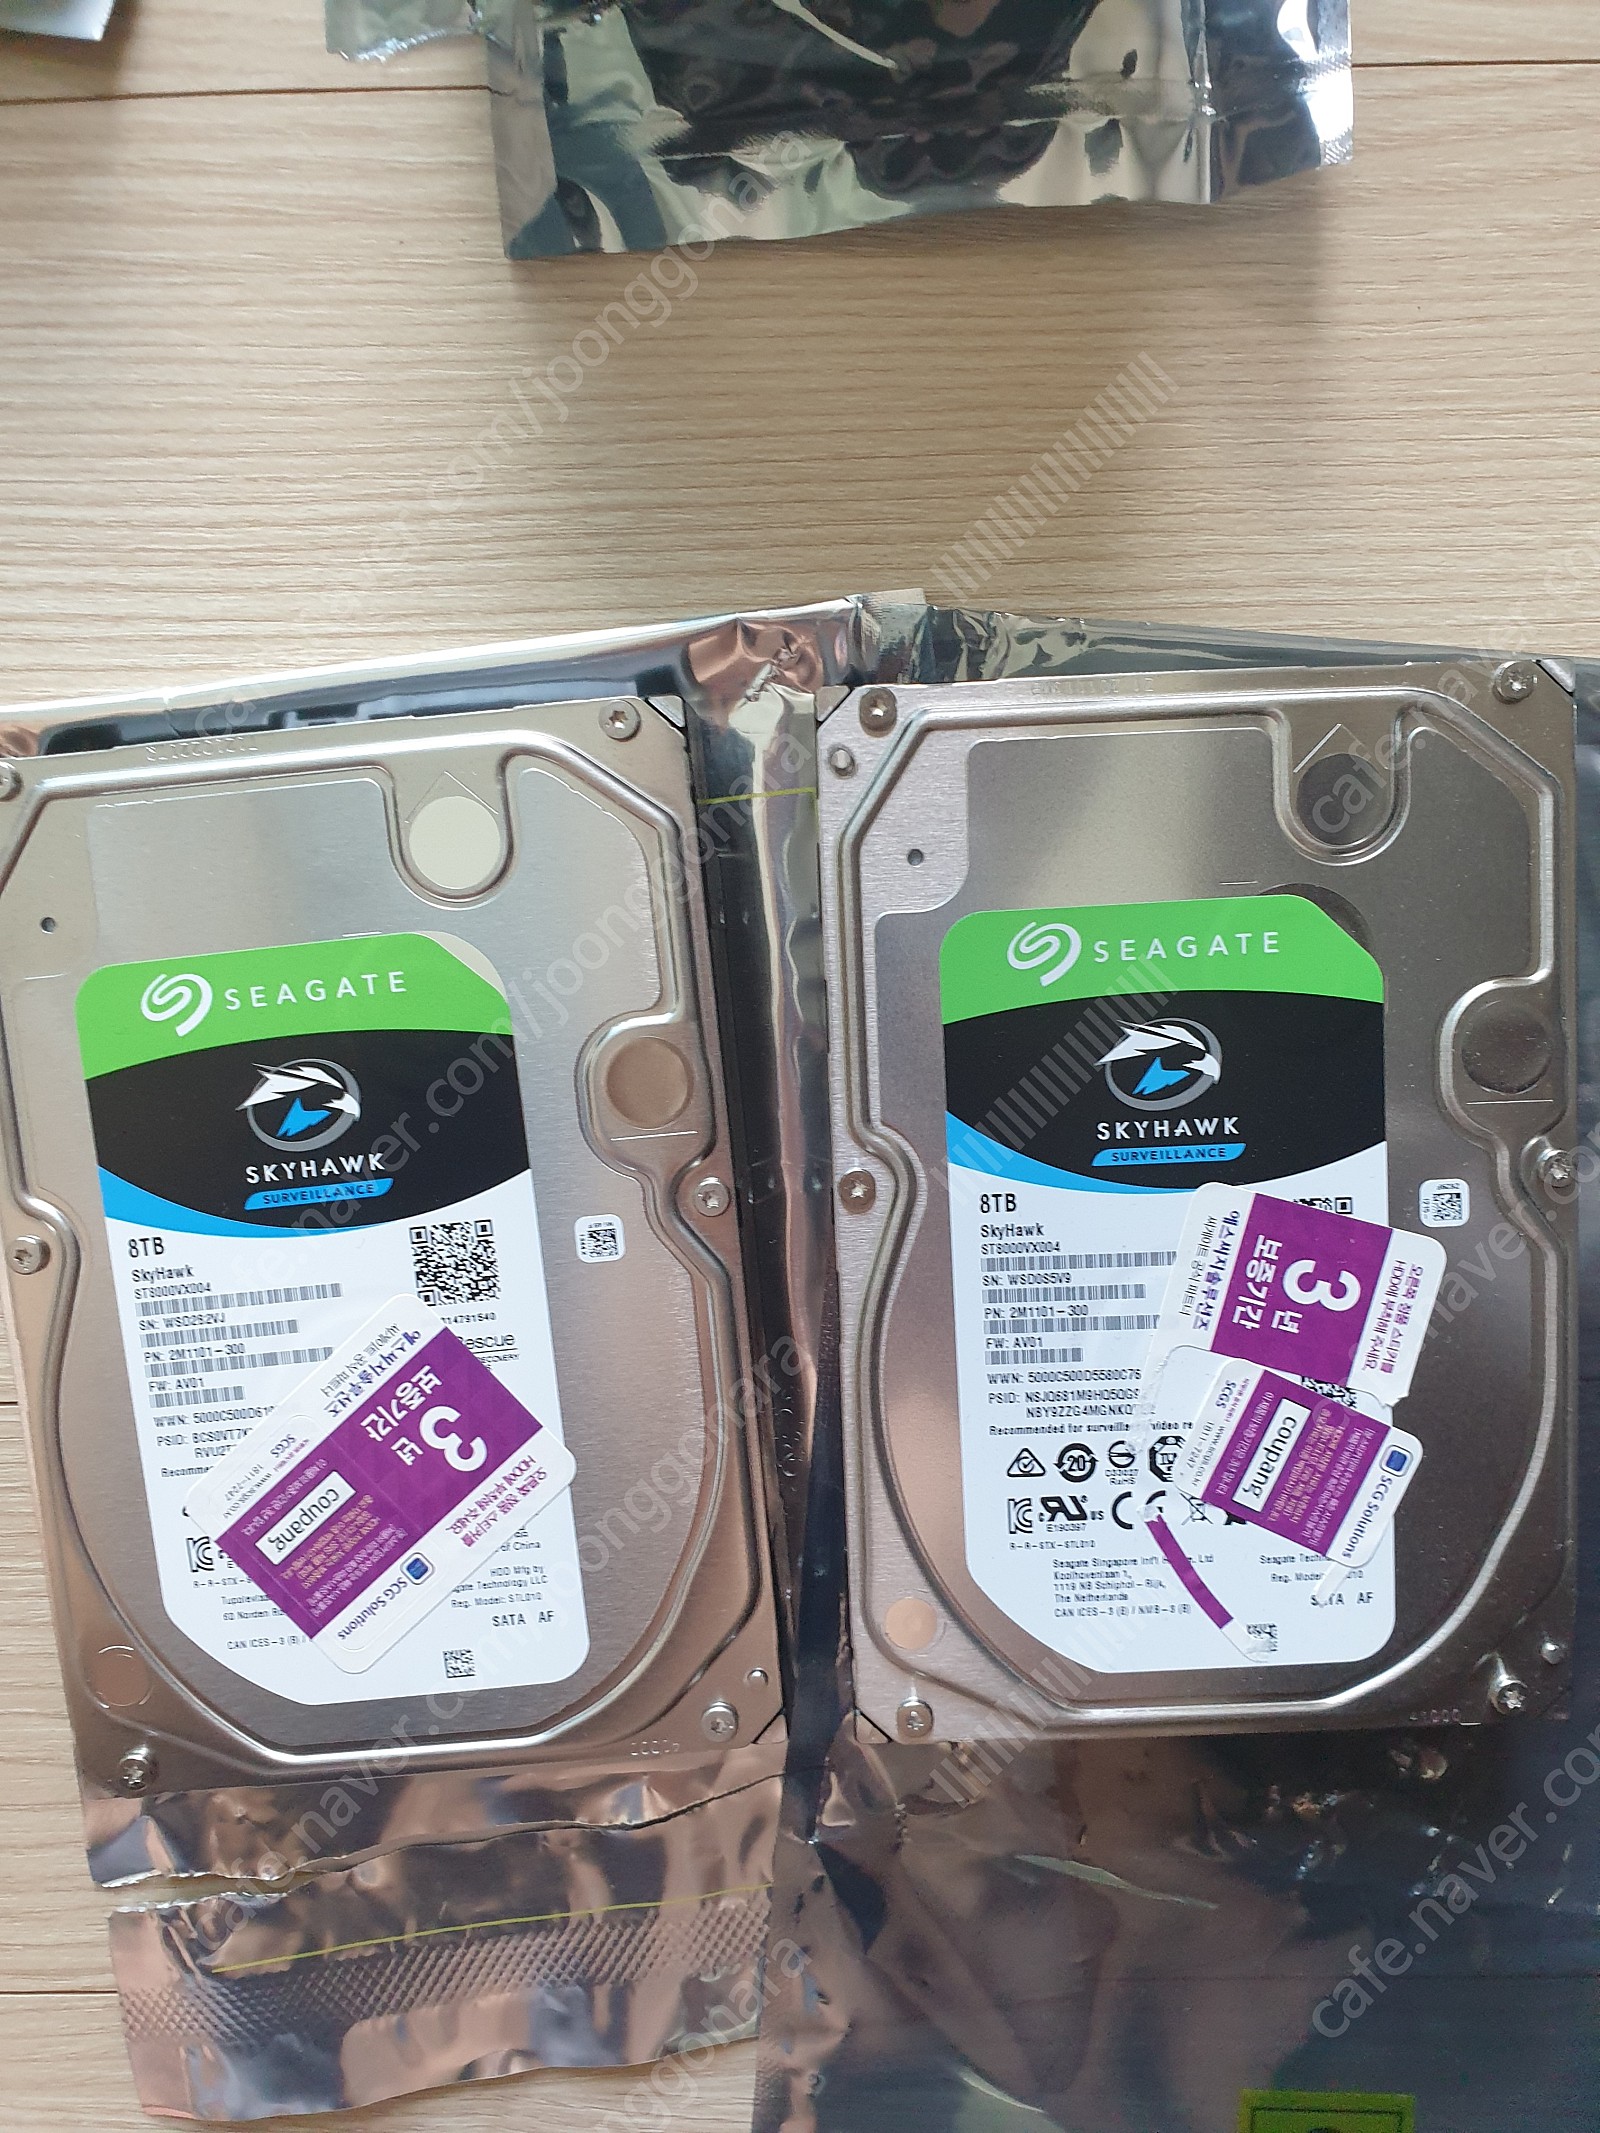 씨게이트 스카이호크 8TB HDD 하드디스크 판매